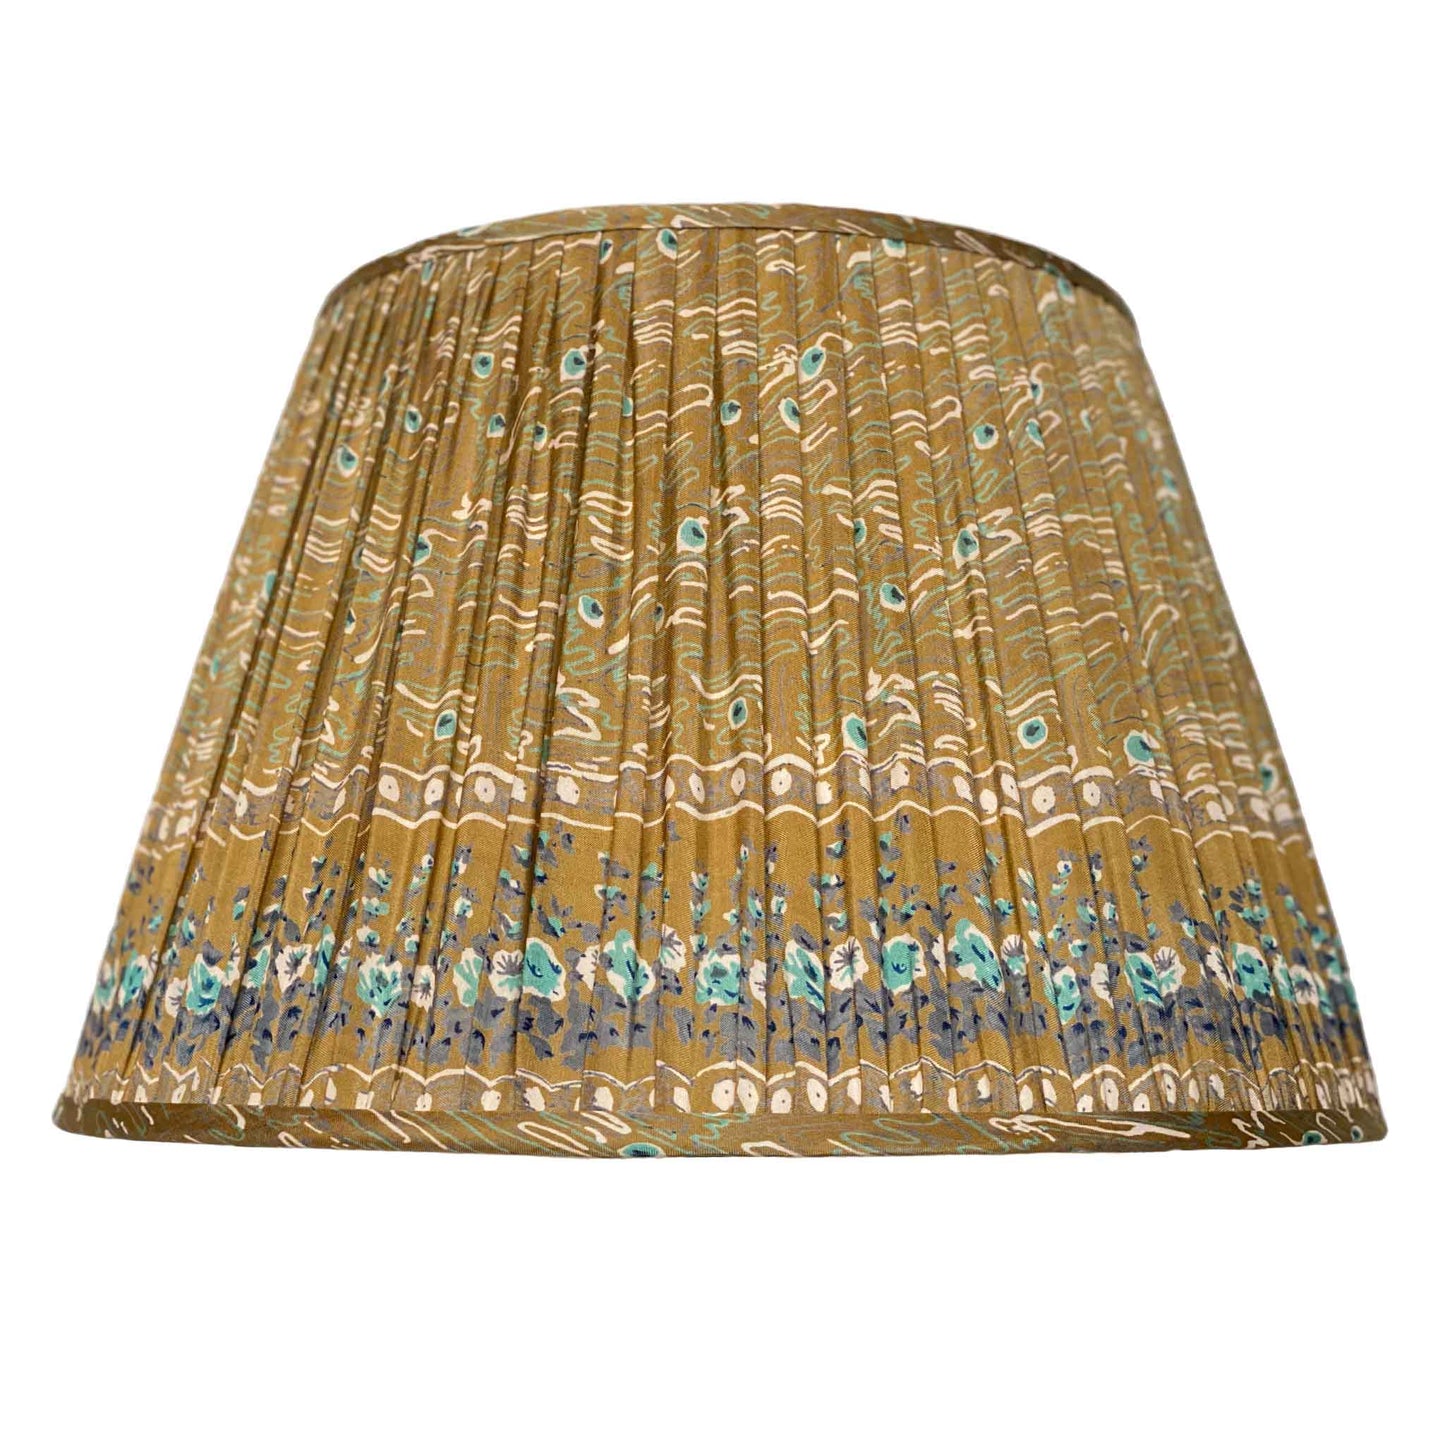 Khaki peacock silk lampshade cutout